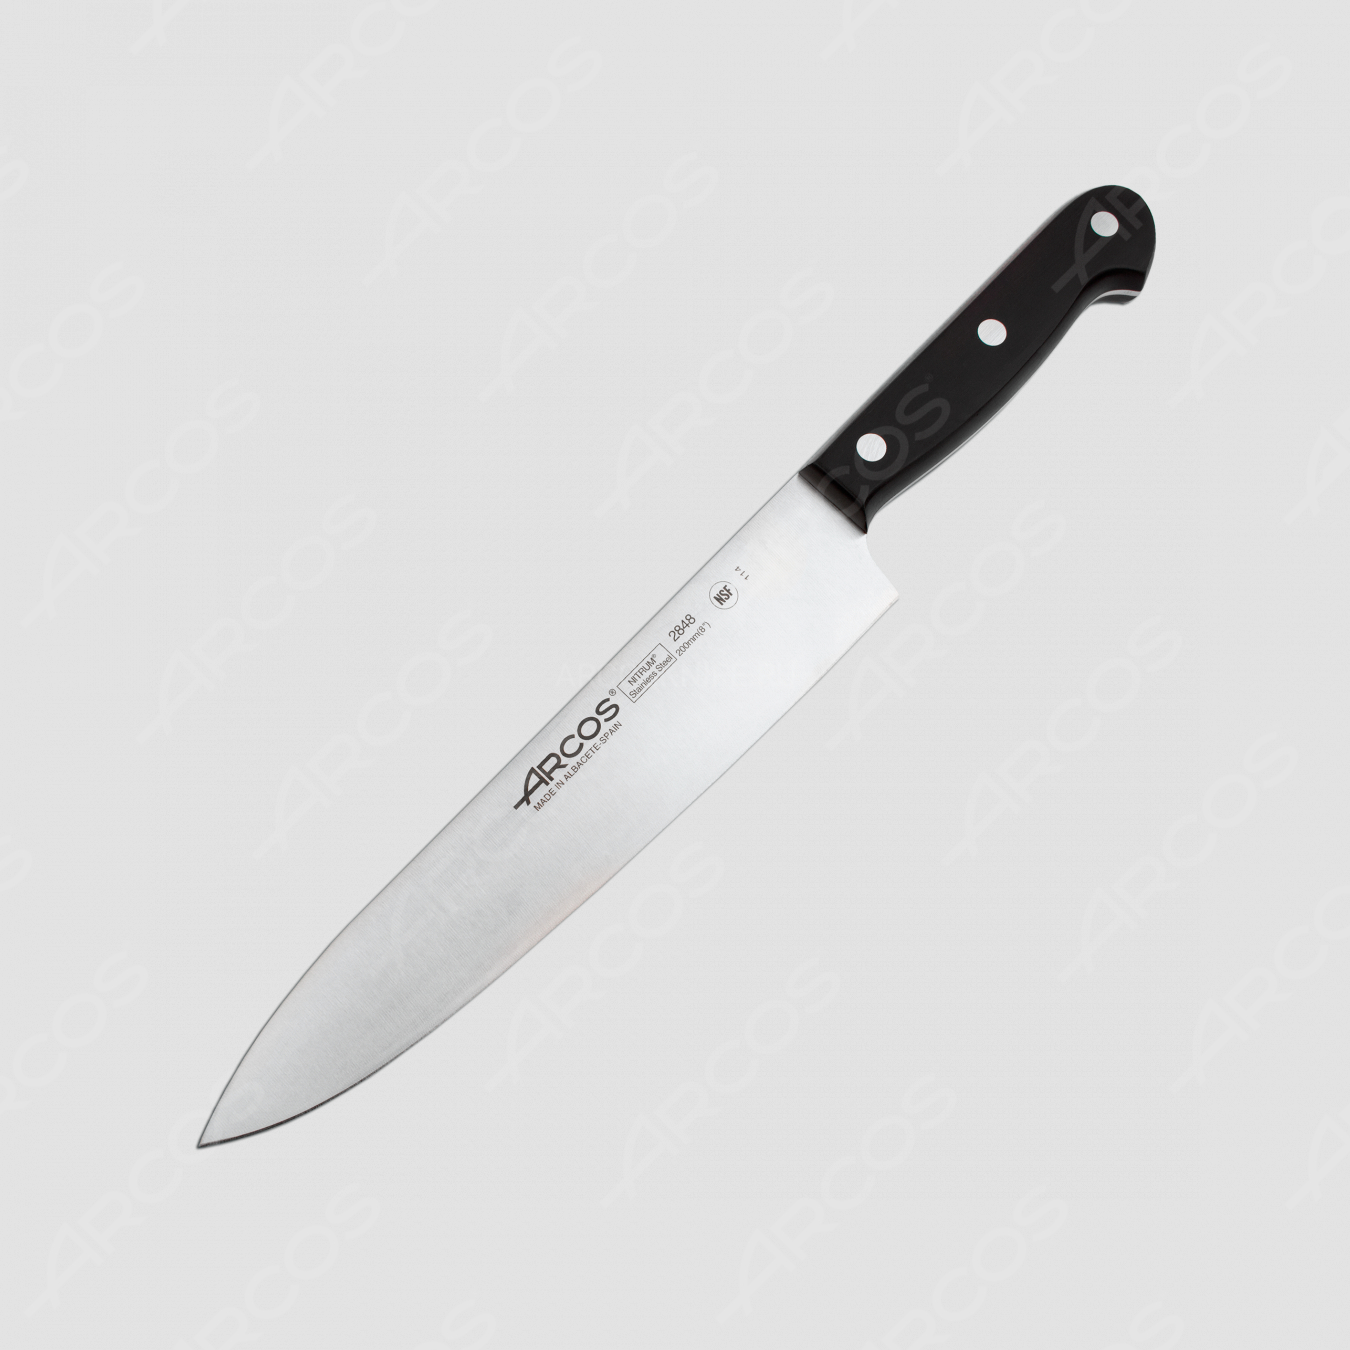 Профессиональный поварской кухонный нож 20 см, серия Universal, ARCOS, Испания